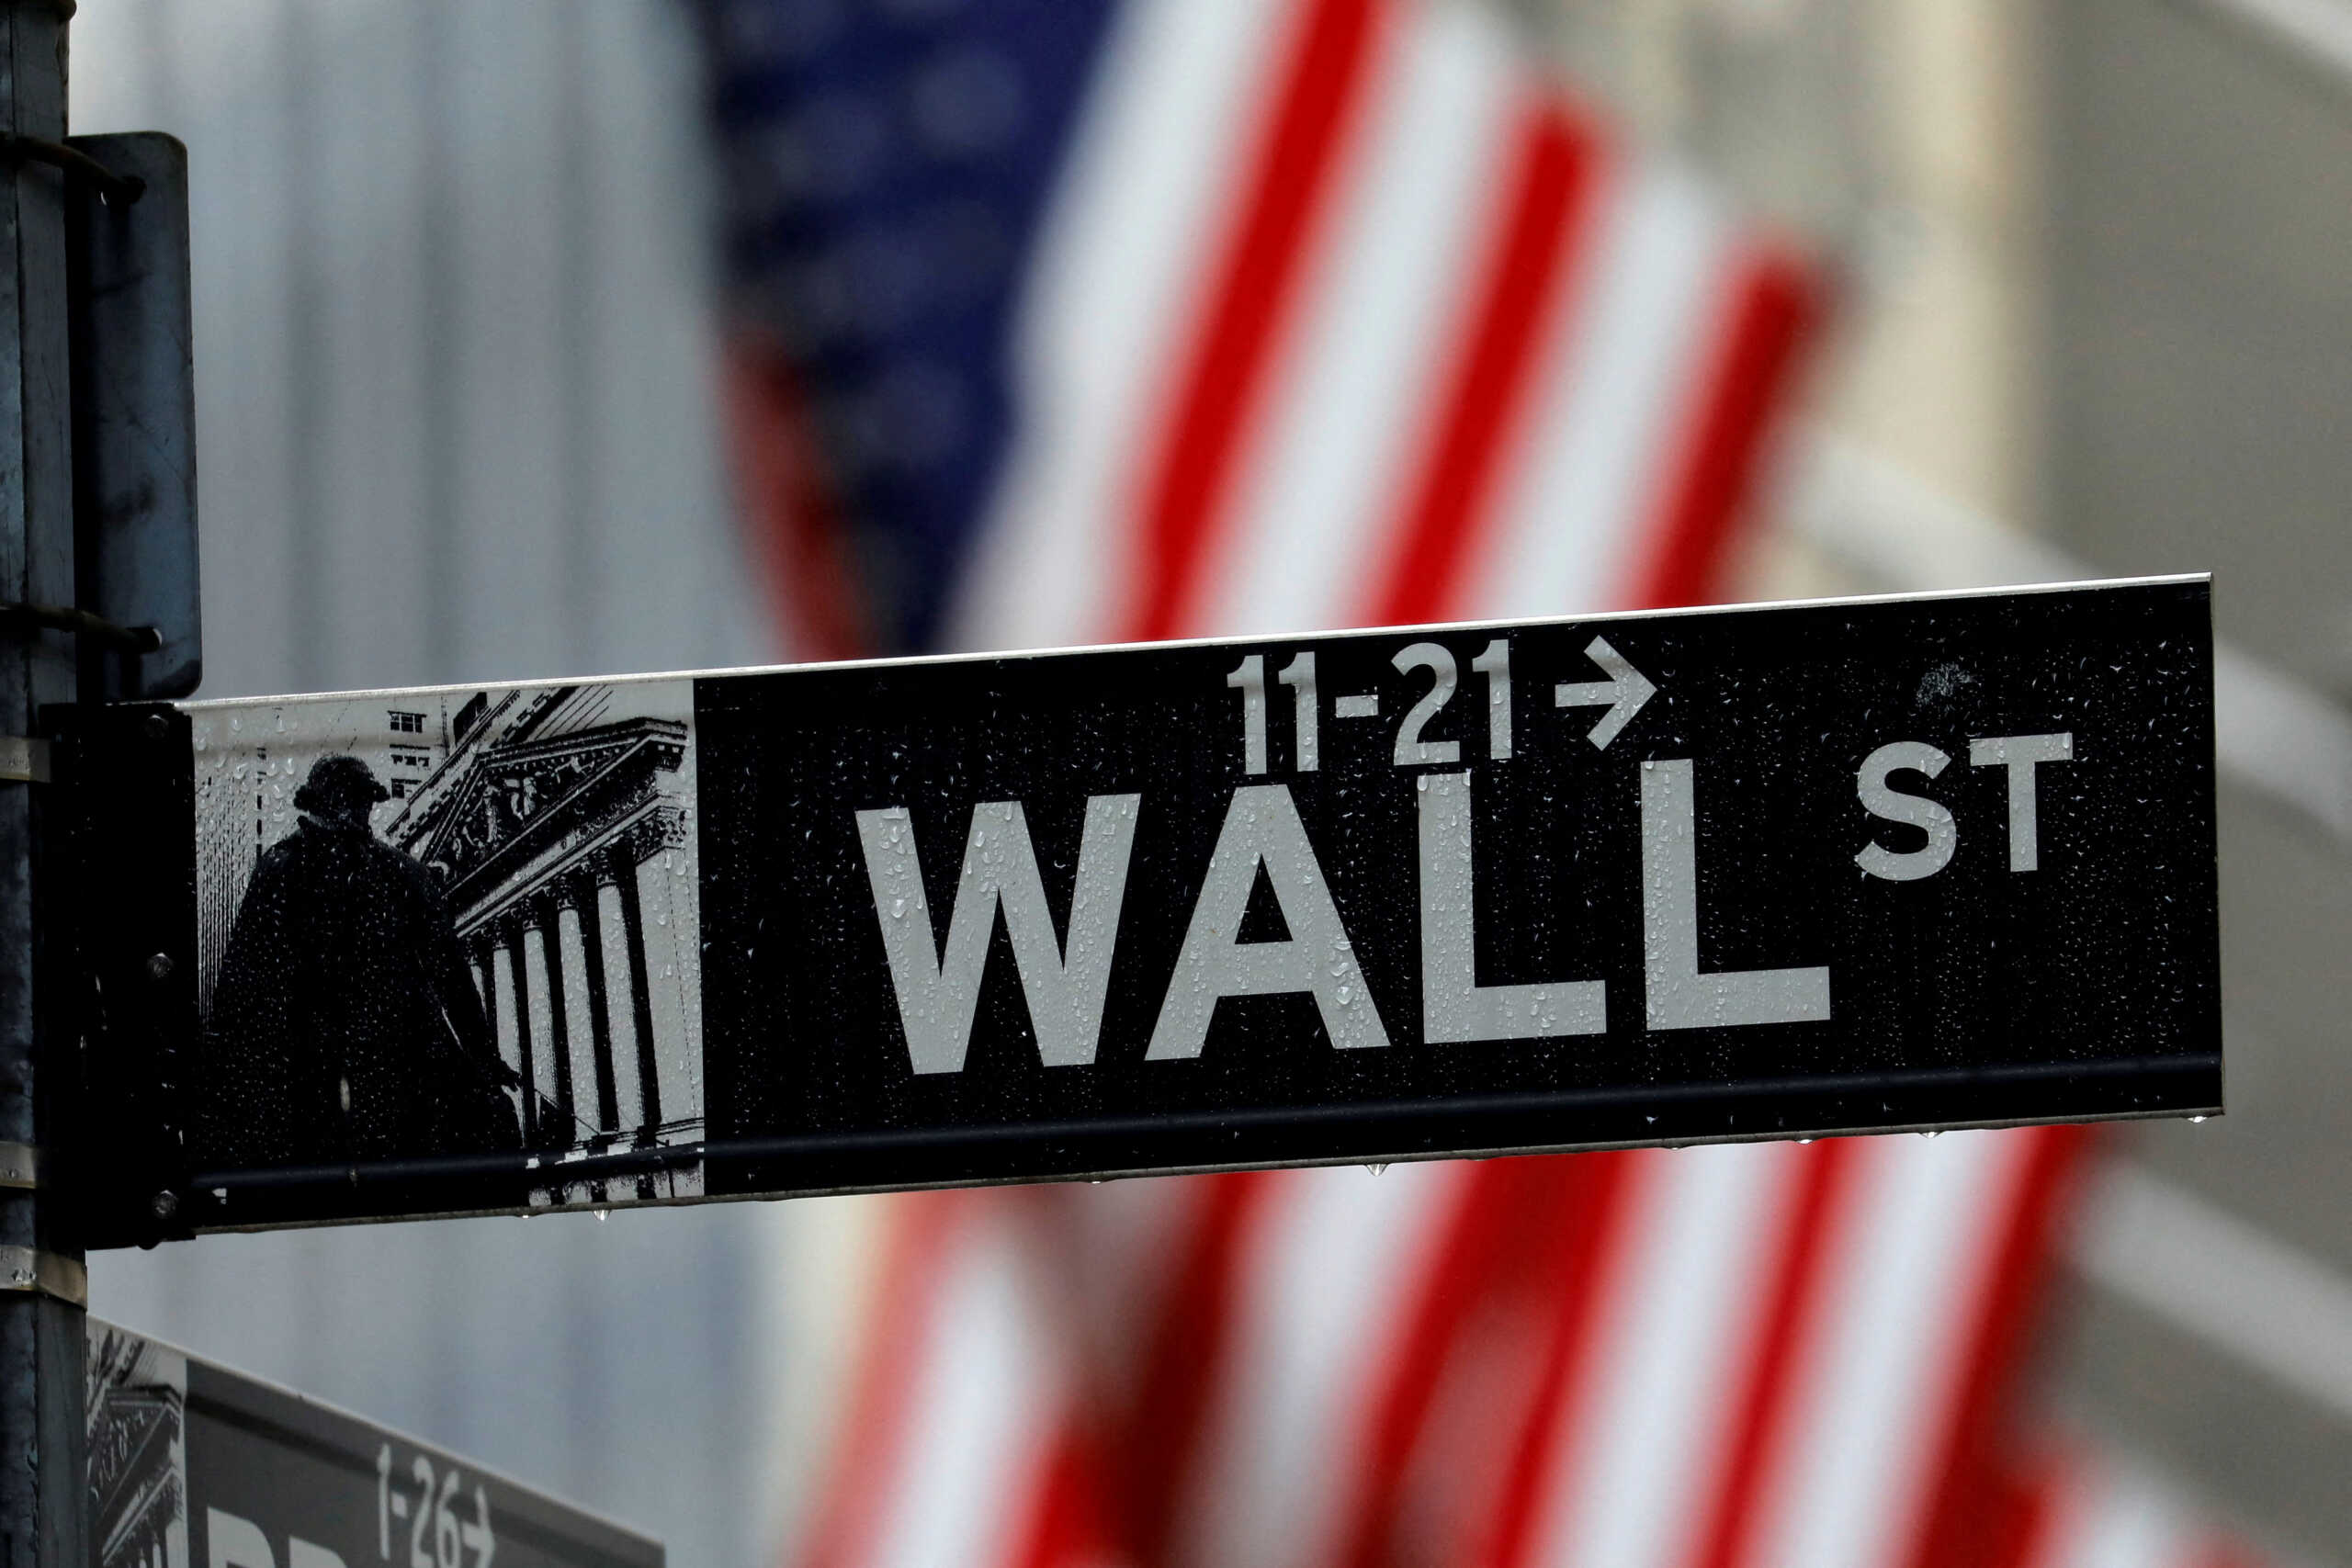 ΗΠΑ: Μεγάλη πτώση στη Wall Street – Απώλειες και στους 3 δείκτες